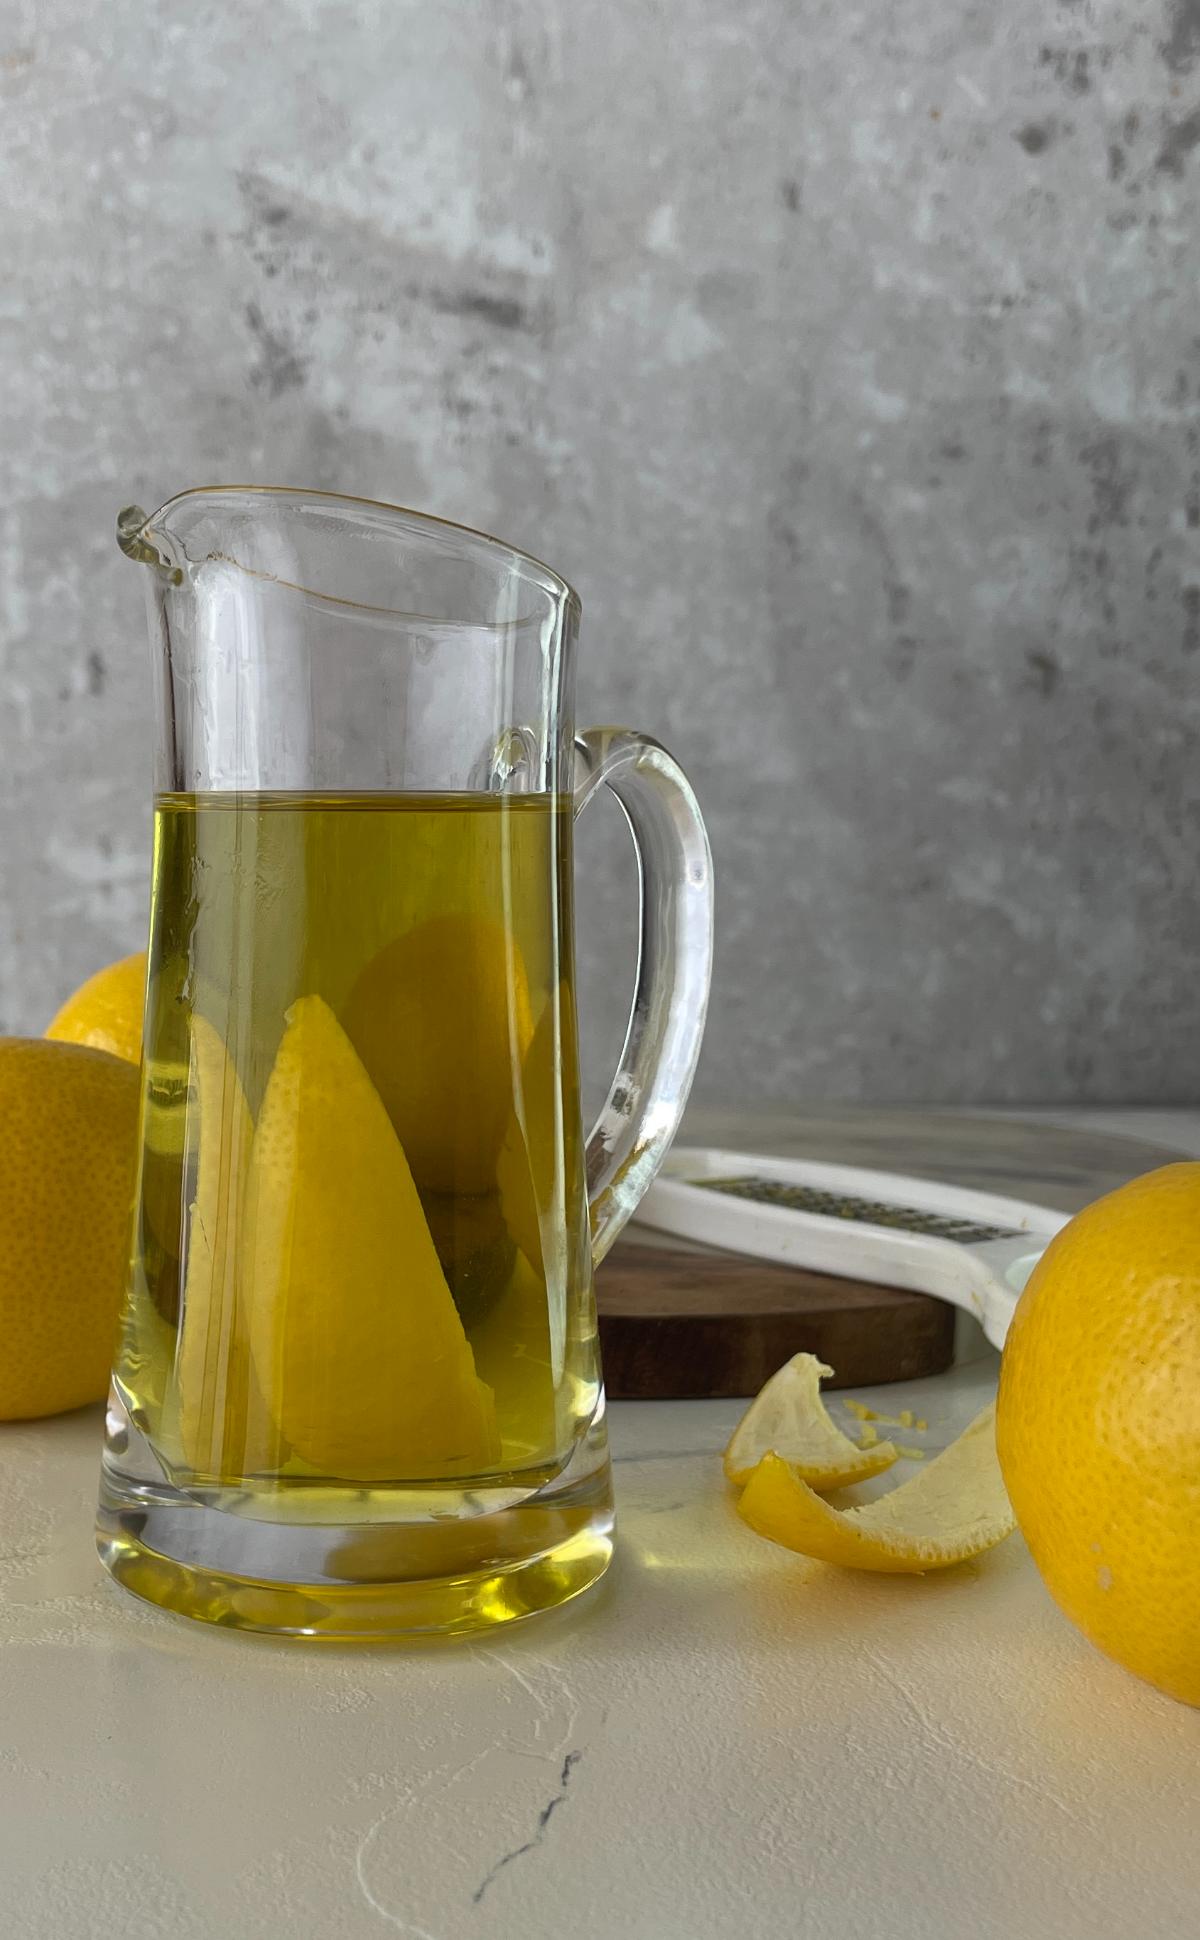  lemon infused olive oil served in a glass jar